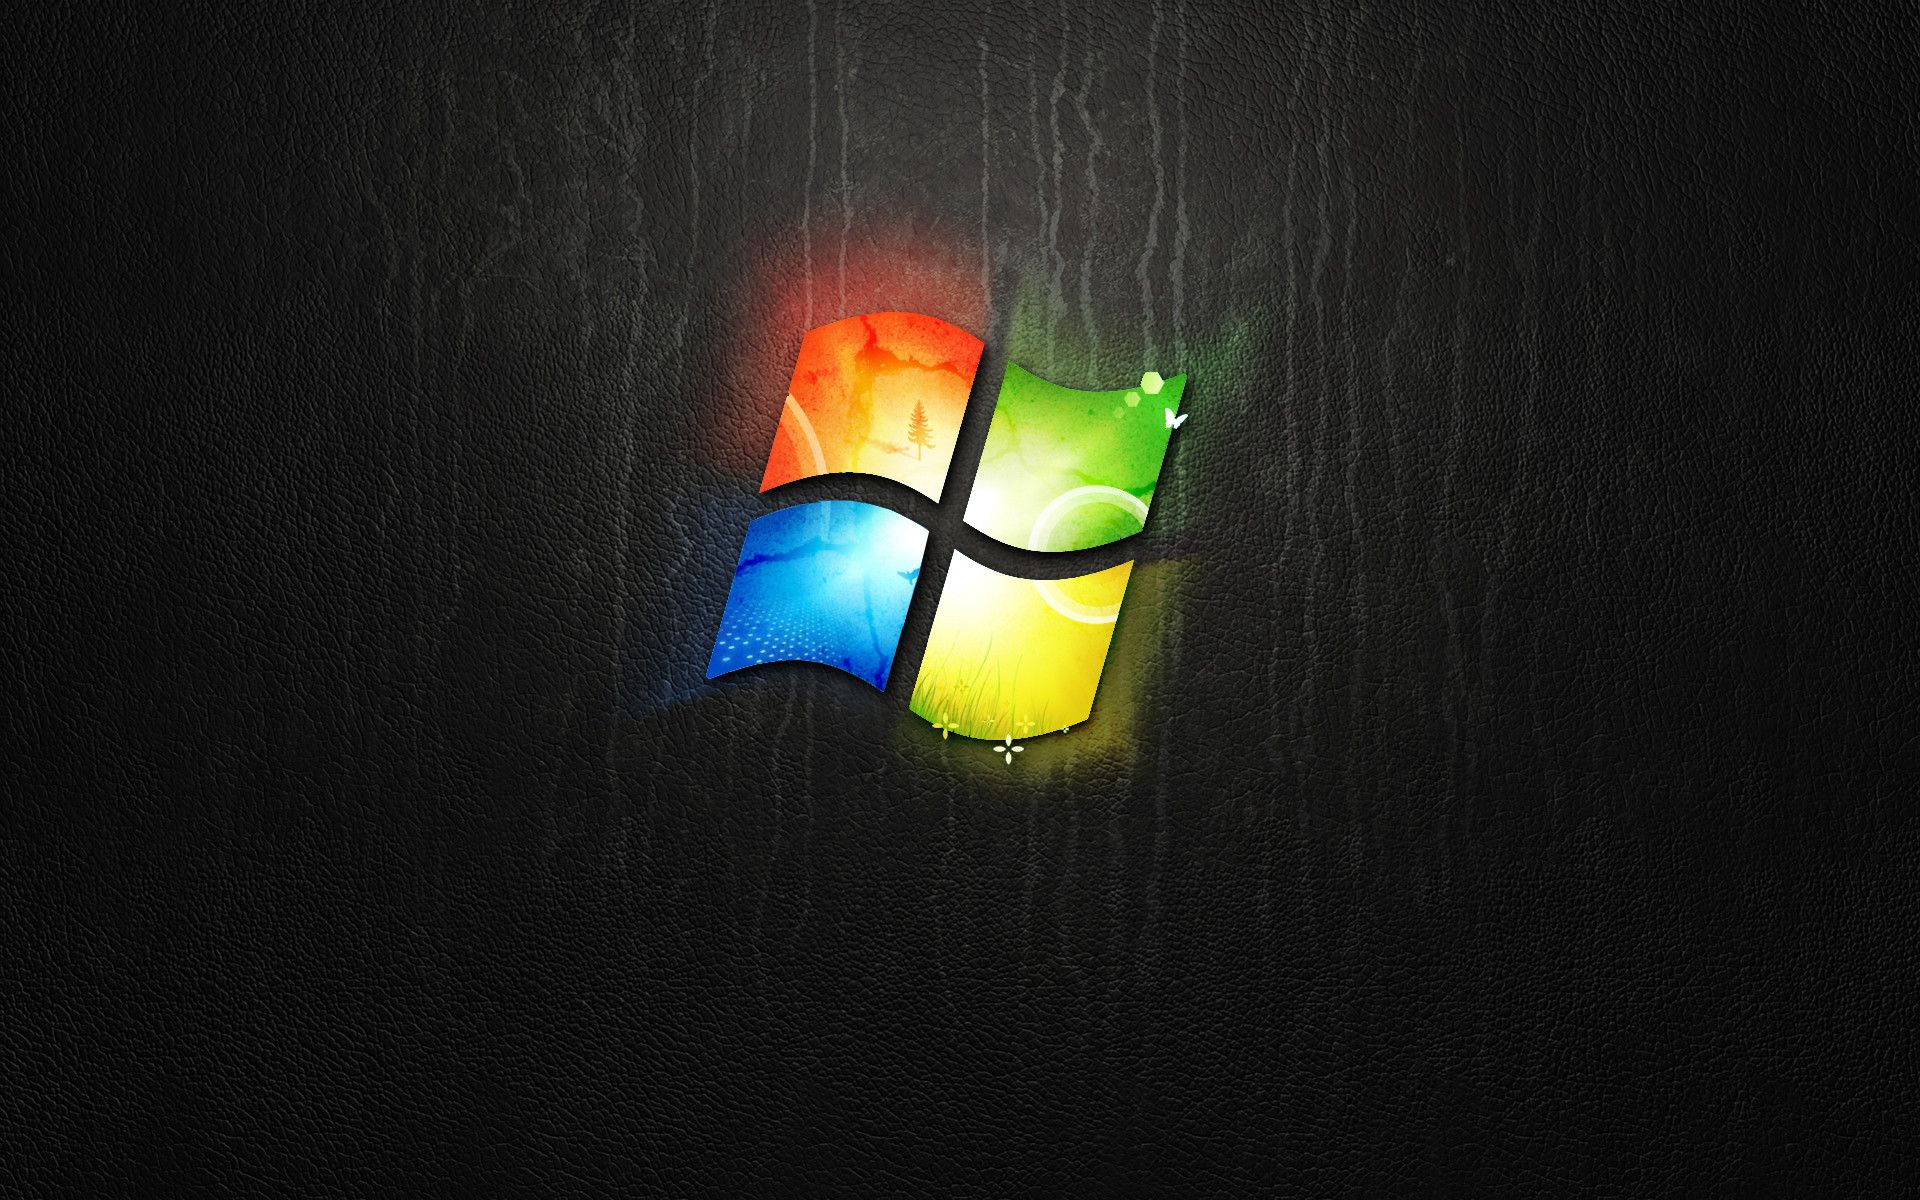 Fondos oscuros de Windows 7 (más de 77 imágenes de fondo)